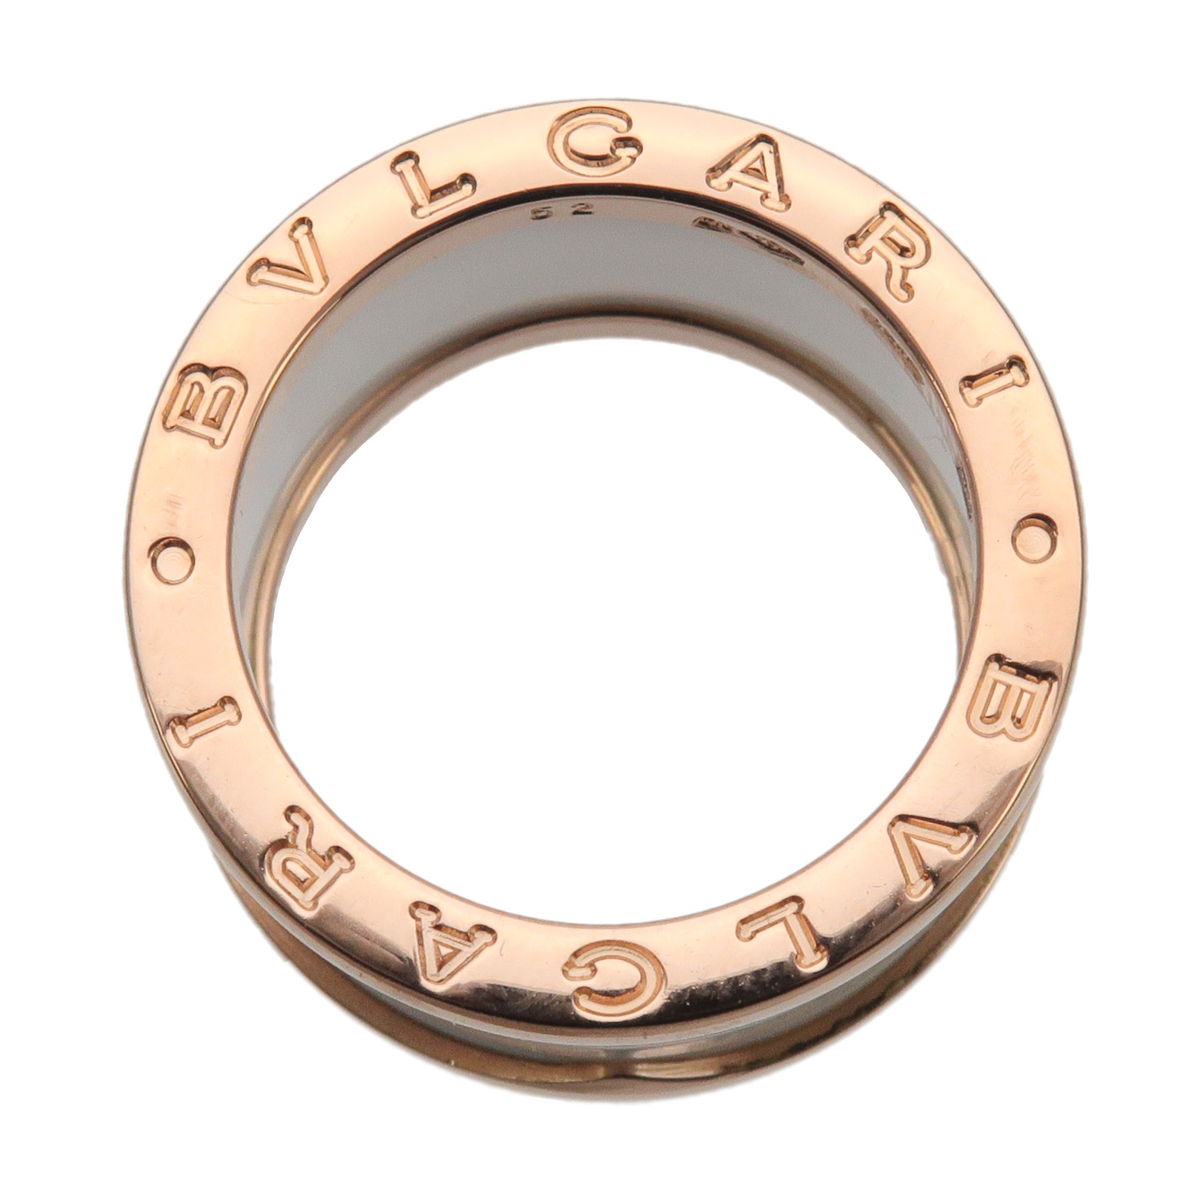 BVLGARI B-zero1 4Band Ring K18 750 Rose Gold #52 US6 EU52